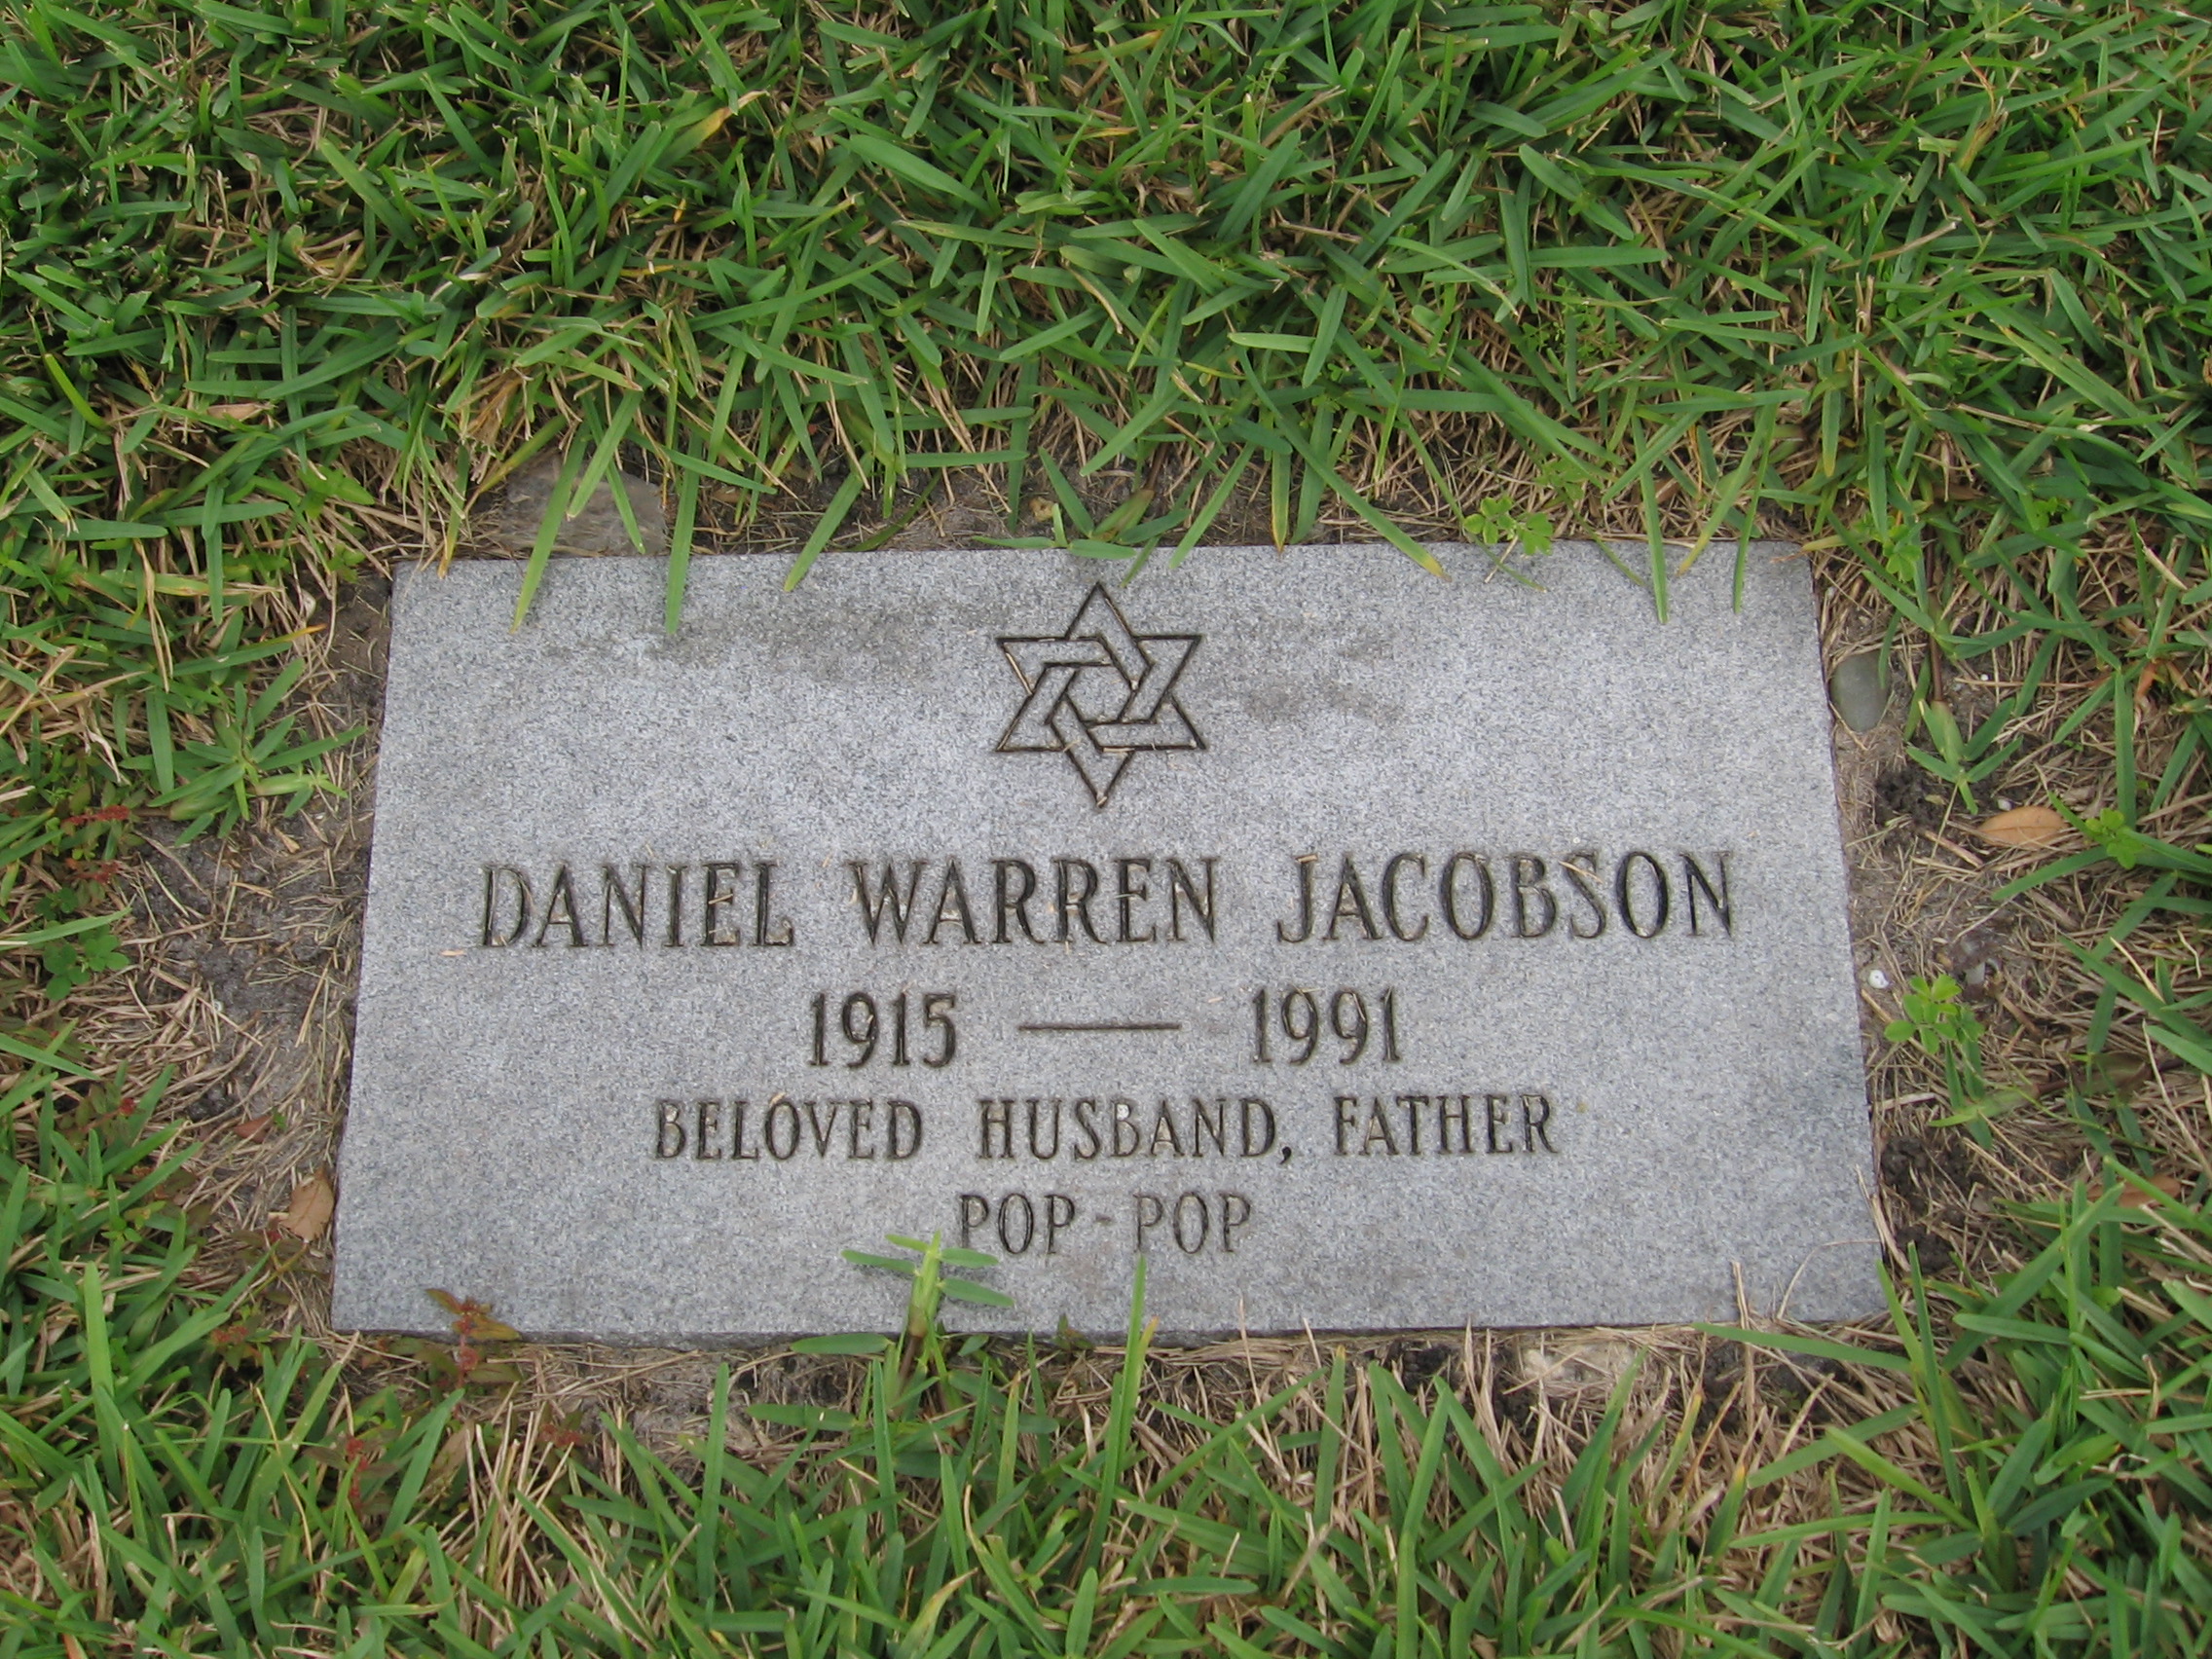 Daniel Warren Jacobson